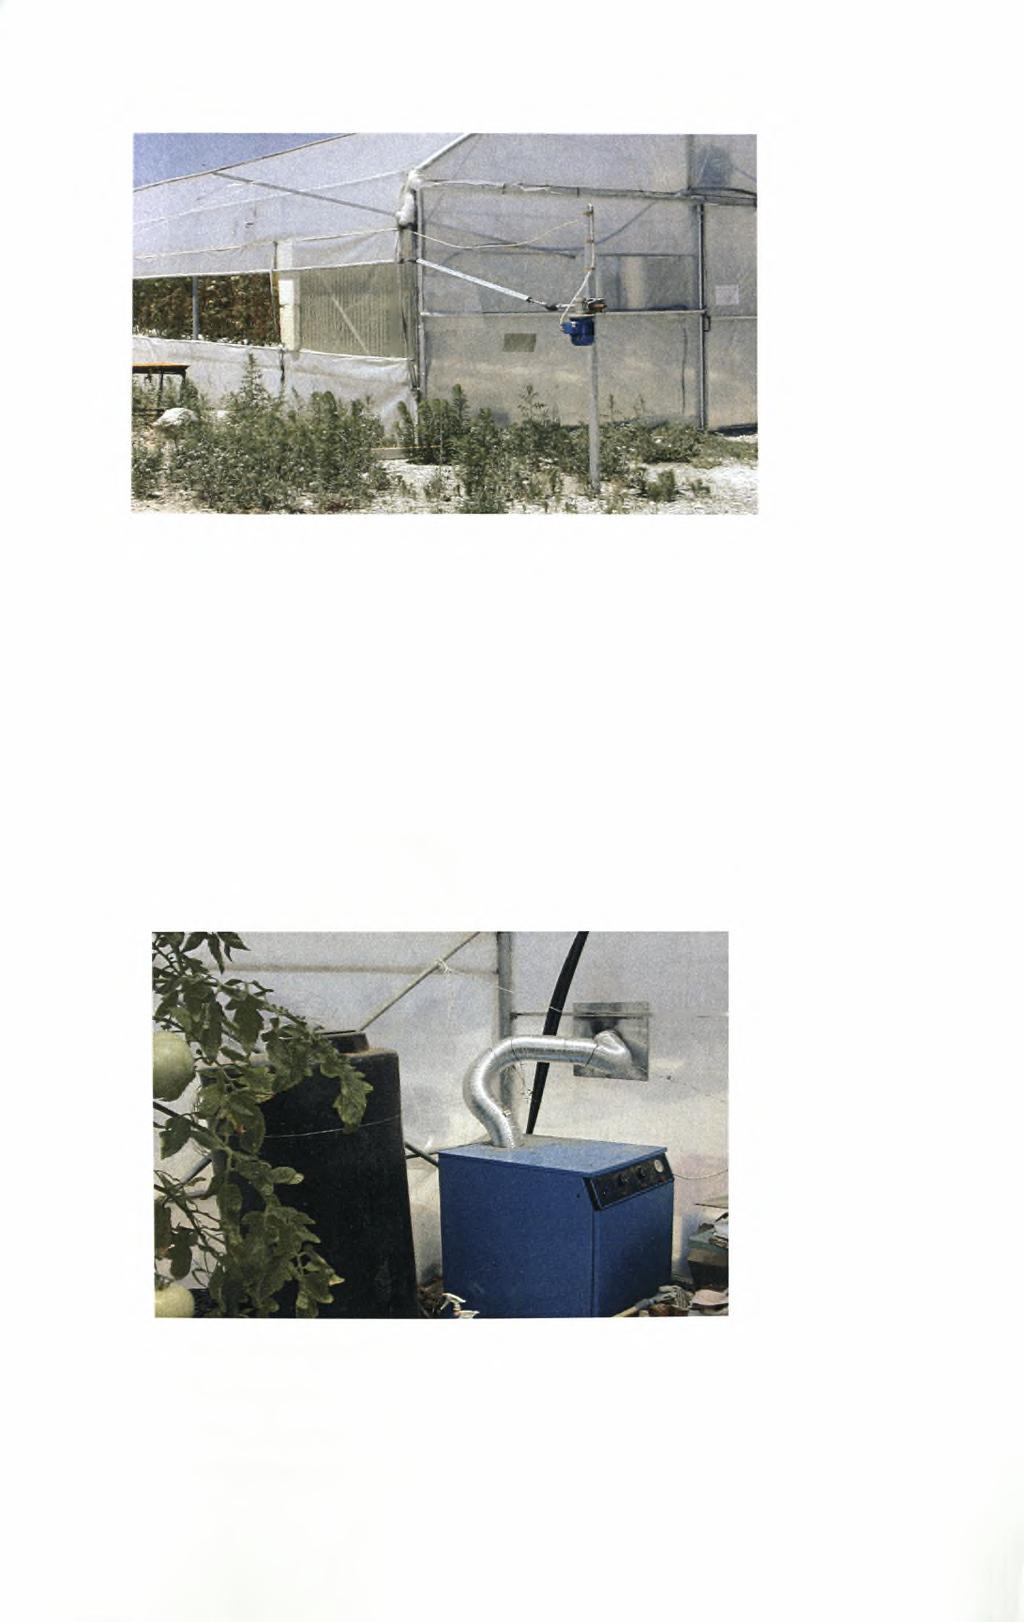 Εικόνα 3.2 Άποψη των πλαϊνών ανοιγμάτων του θερμοκηπίου που χρησιμοποιούνται για αερισμό.